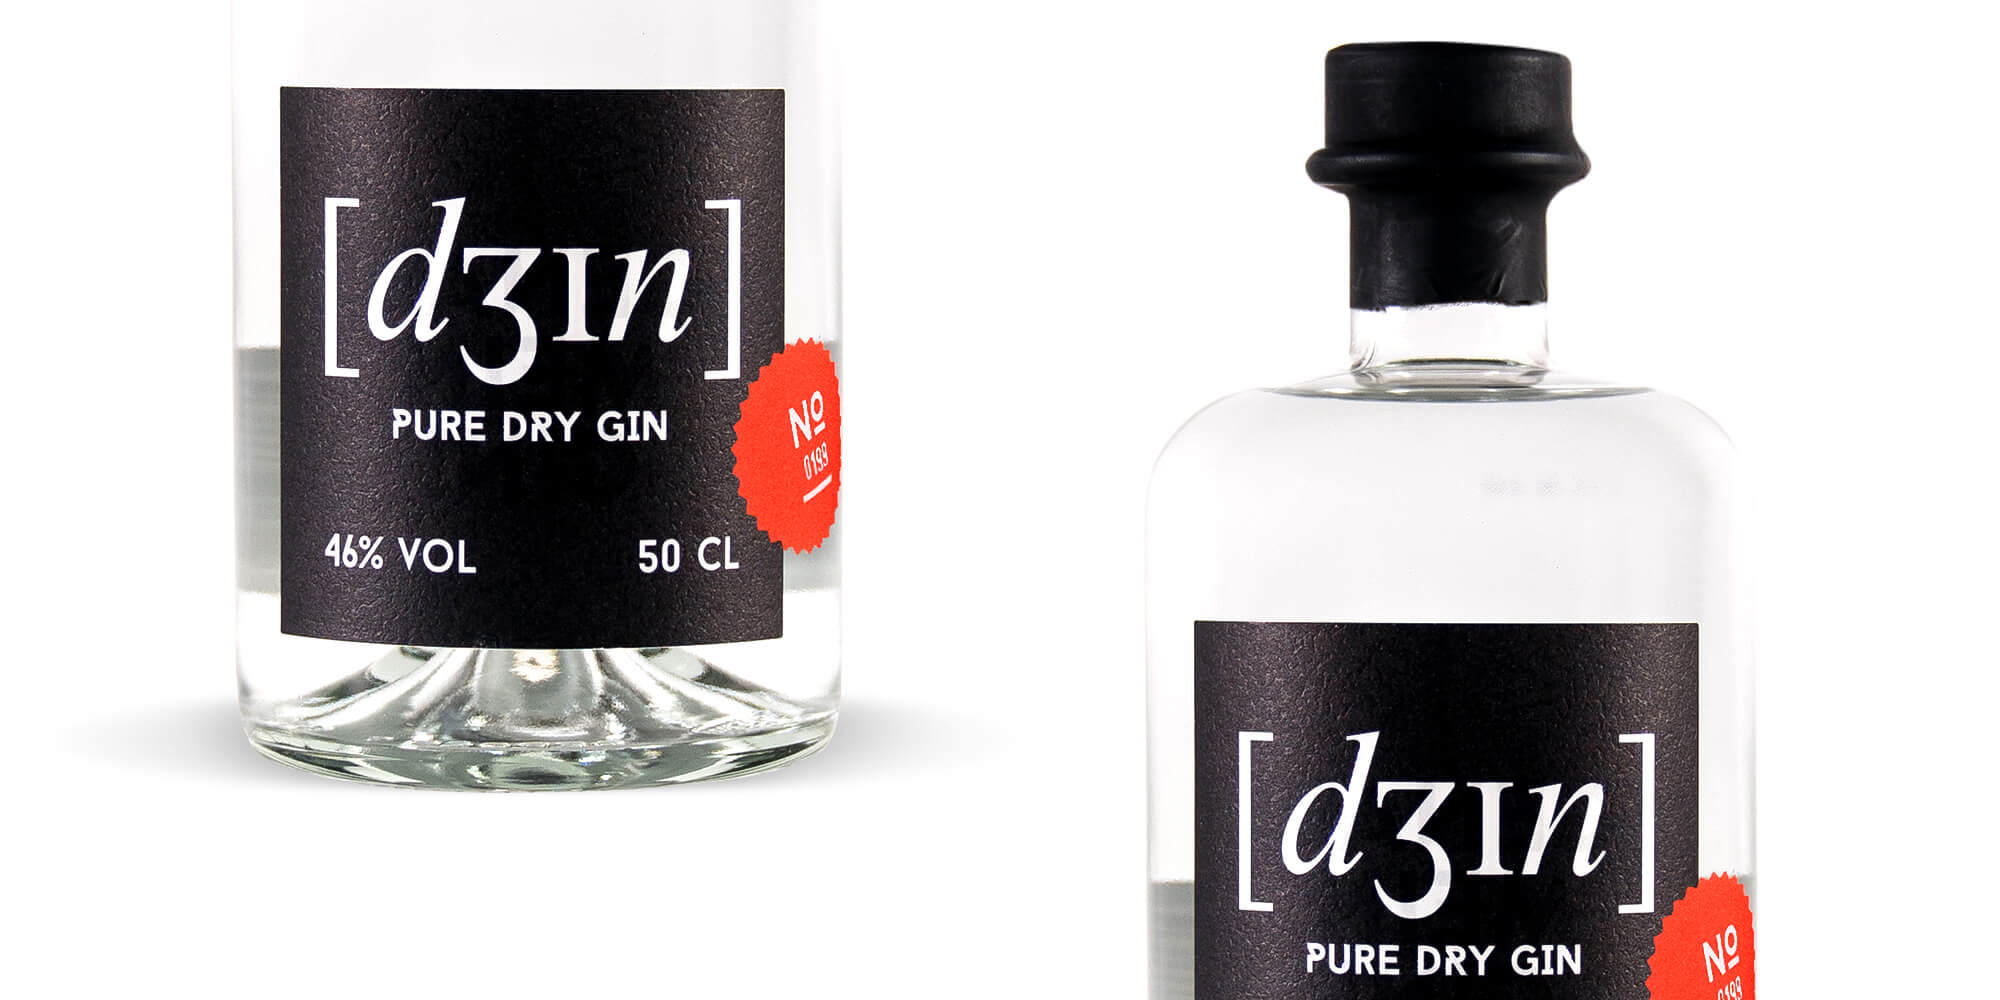 Schau und Horch Produktfotografie Dein Gin 4 - Corporate Identity für [dʒɪn]